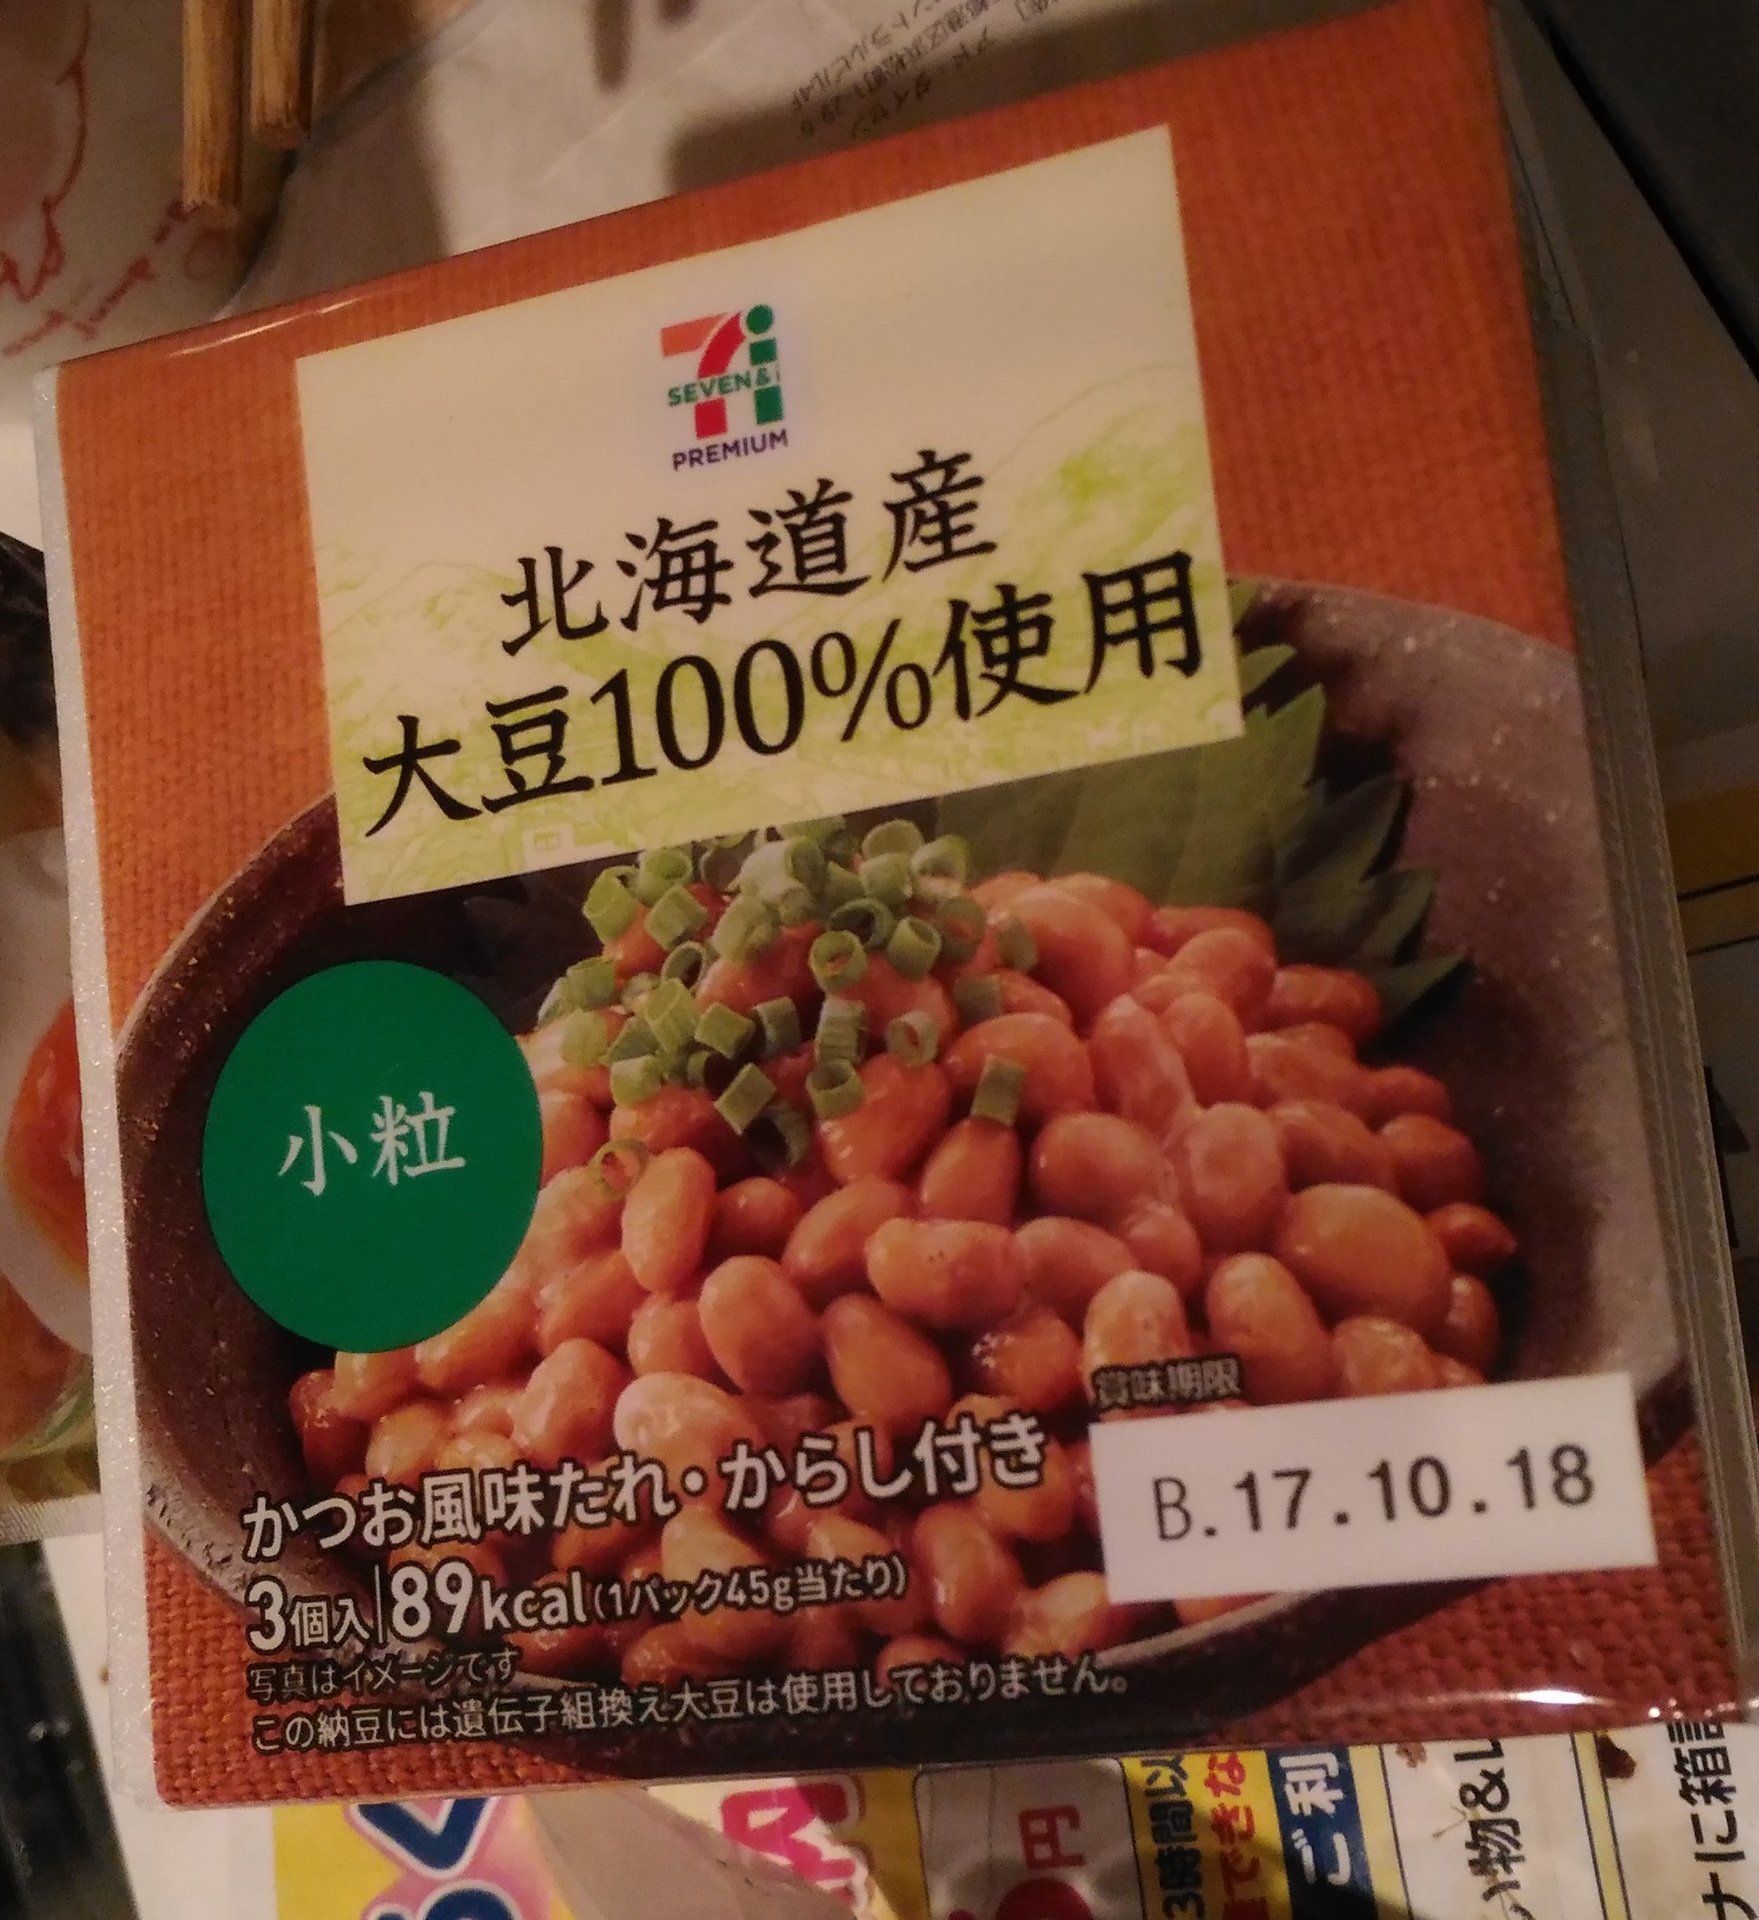 セブンプレミアム 北海道産大豆100 使用小粒納豆3p新商品 値段は セブンイレブン人気おすすめ おにぎりお惣菜新作種類ブログで